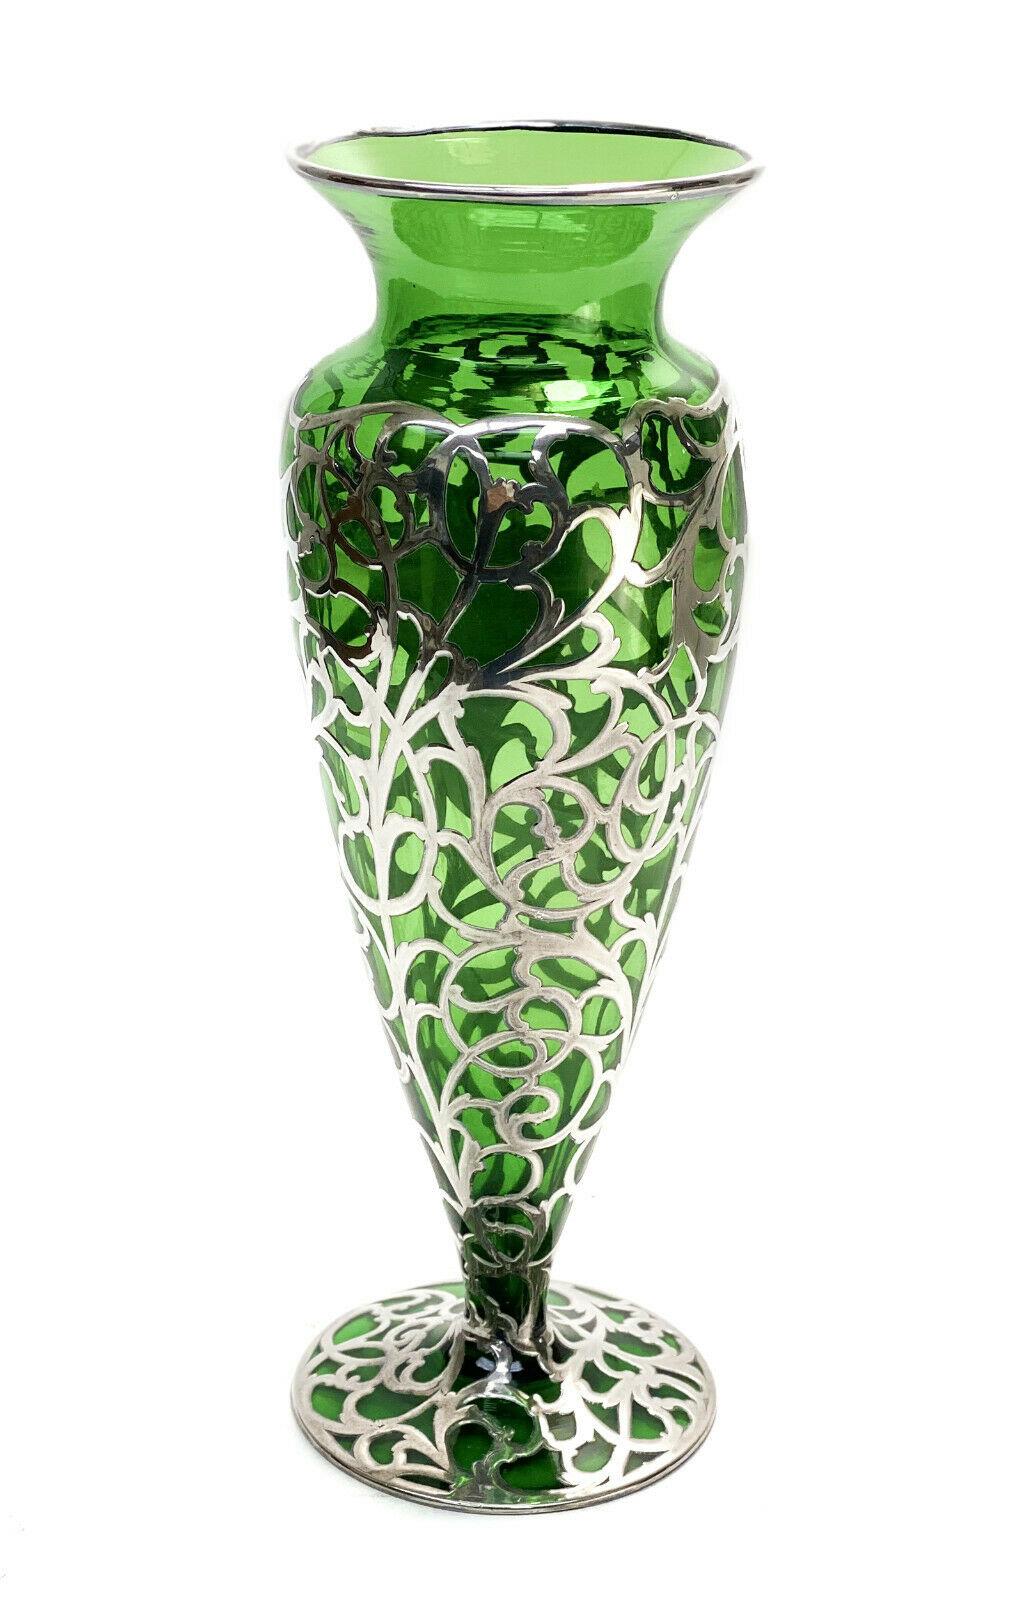 Vase américain de 12 pouces avec pied en verre vert recouvert d'argent, vers 1900

Le verre a une teinte verte et est orné de motifs de rinceaux feuillus. Monogramme 